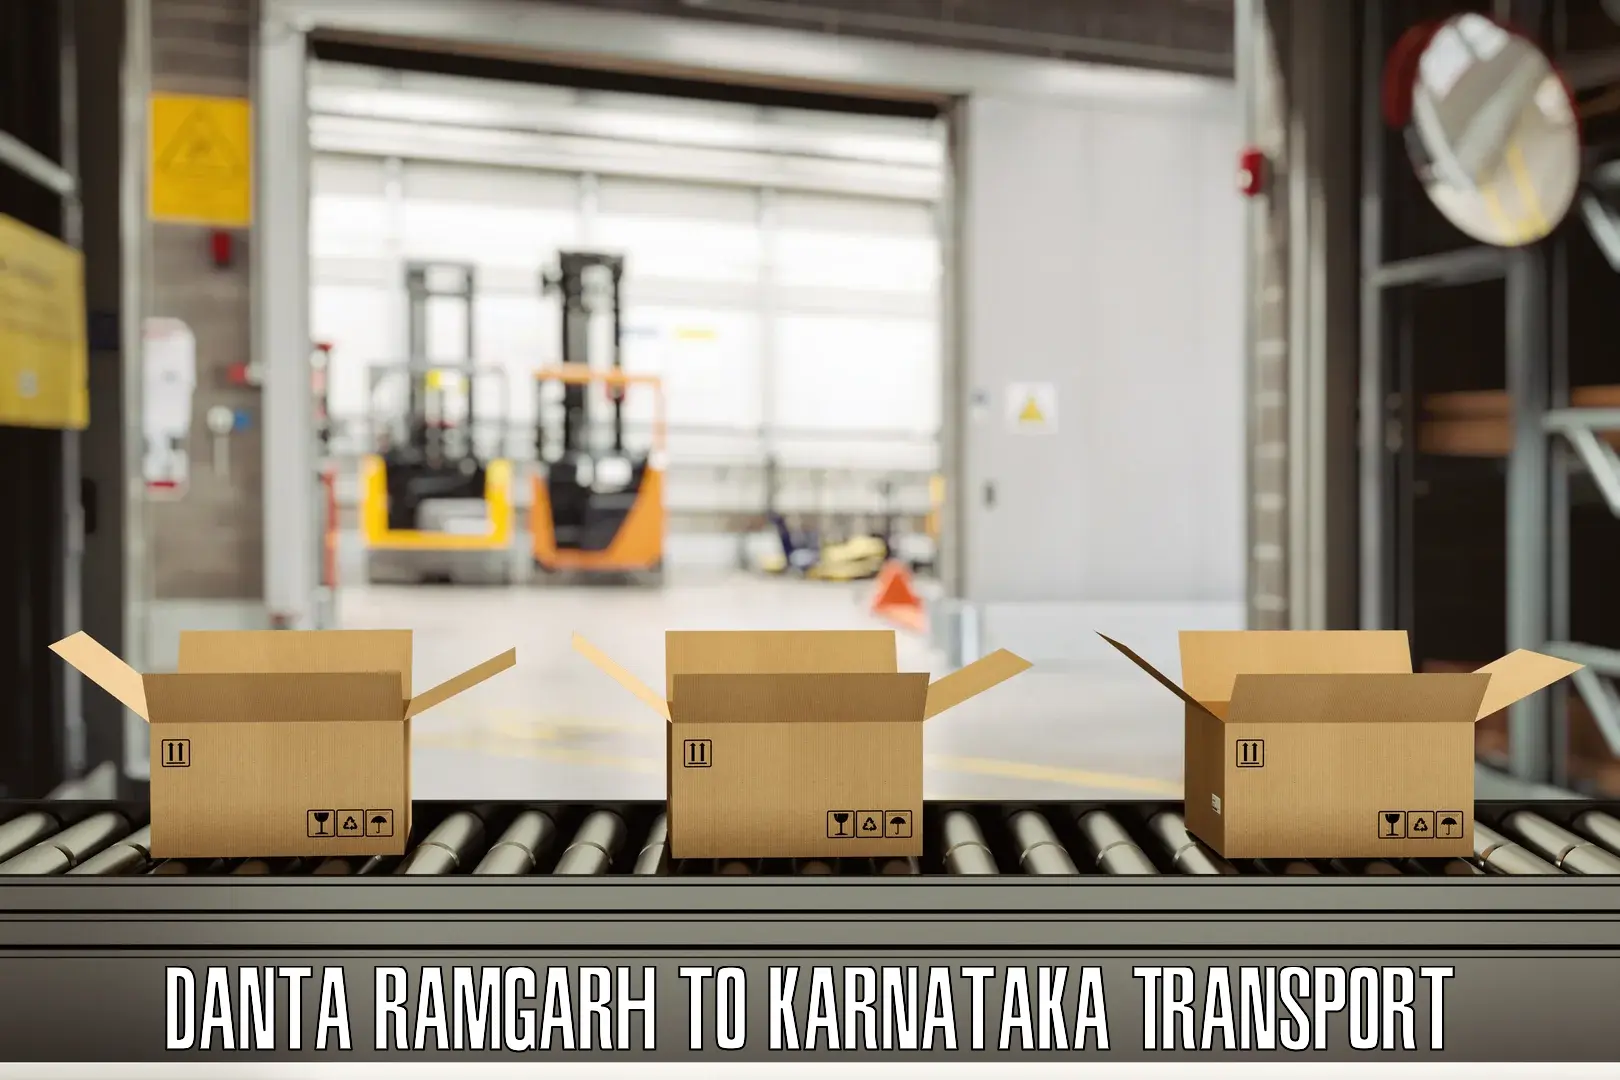 Interstate transport services Danta Ramgarh to Ranebennur